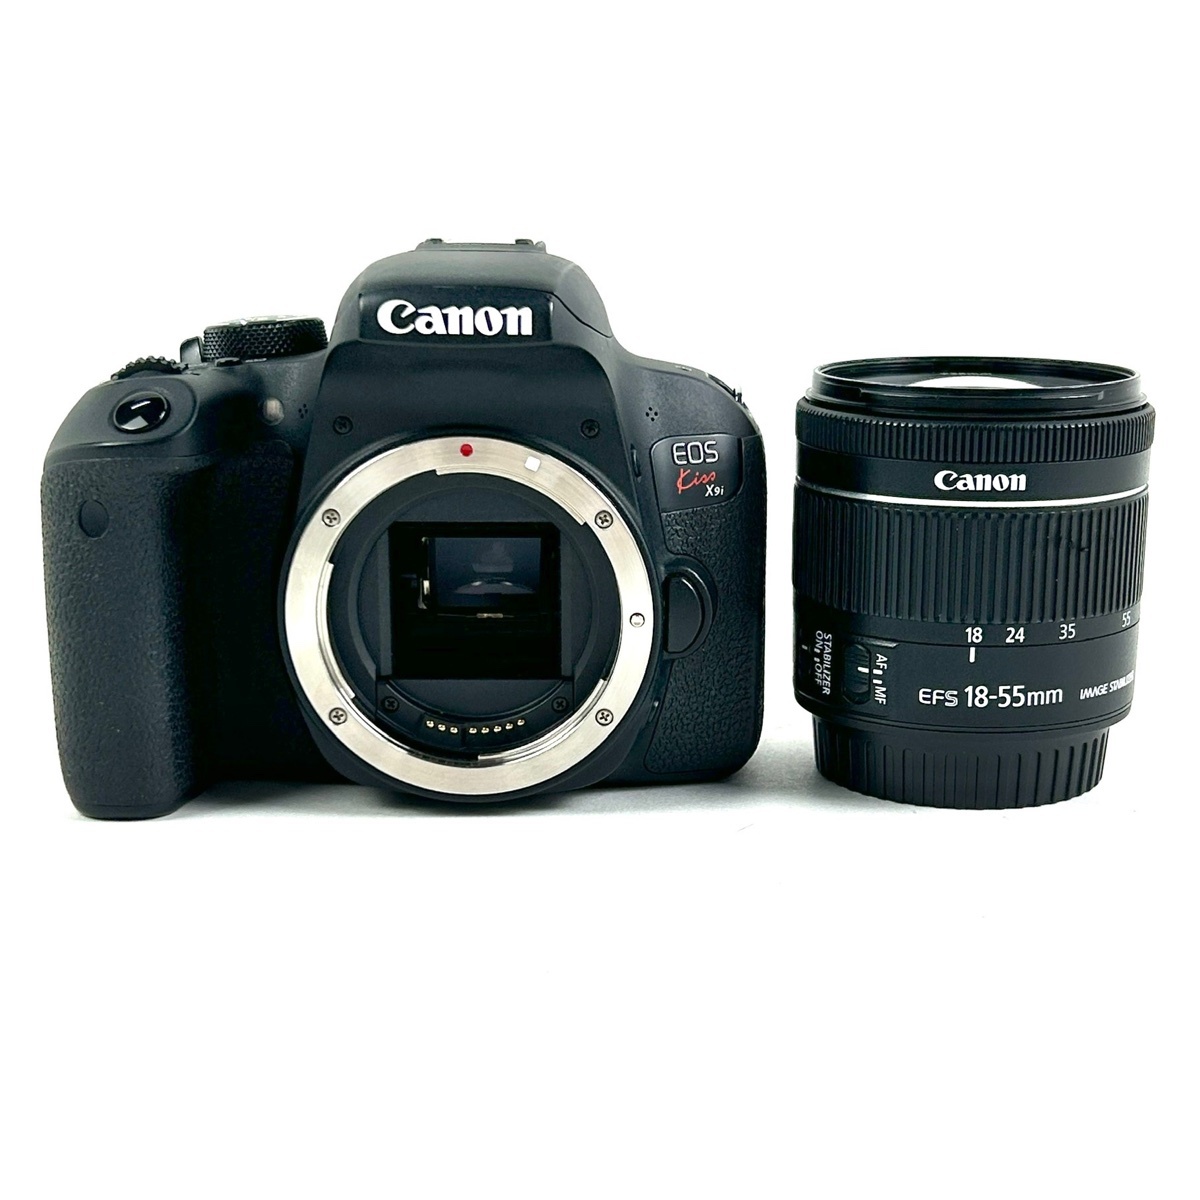 キヤノン Canon EOS Kiss X9i レンズキット デジタル 一眼レフカメラ 【中古】_バイセル 31051_1